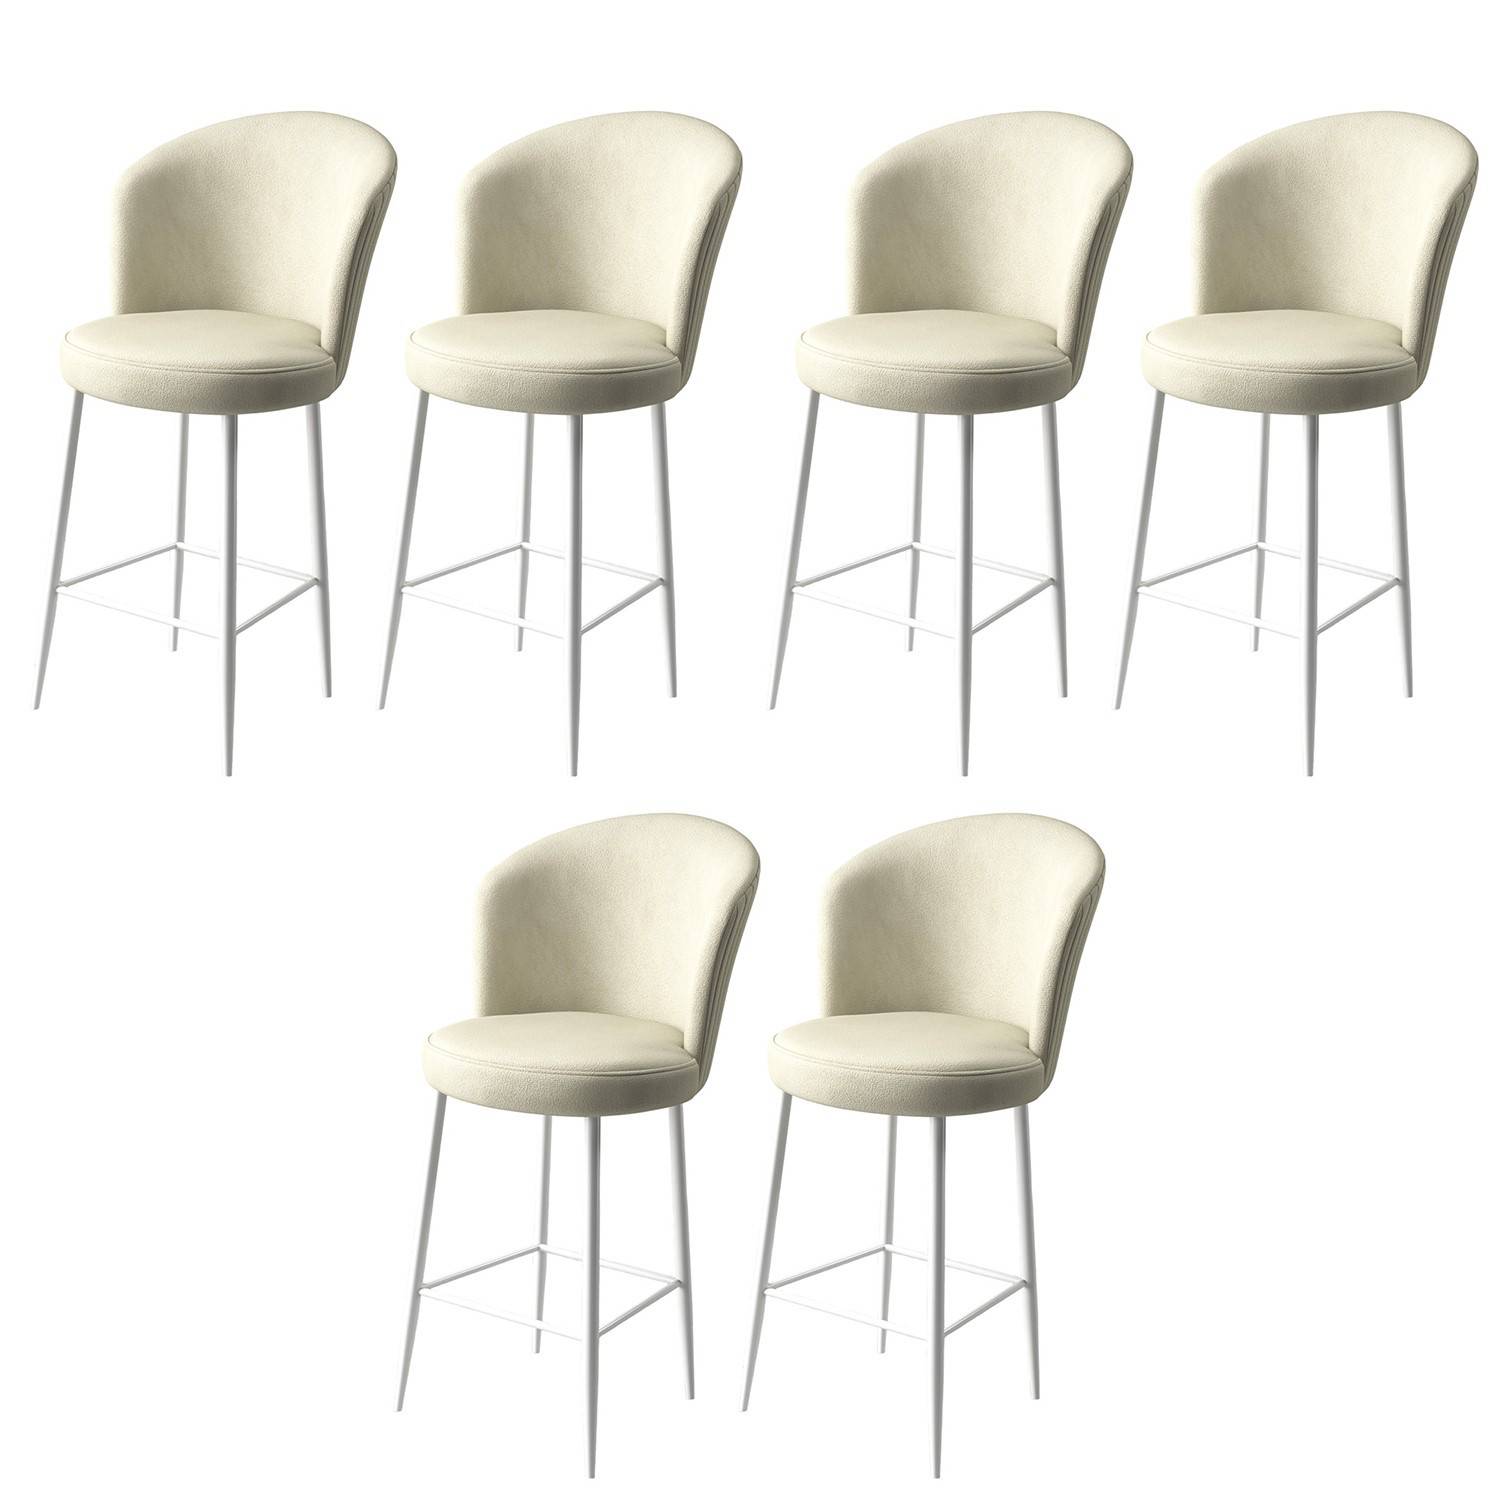 Lote de 6 sillas de bar Valatio de terciopelo crema y metal blanco